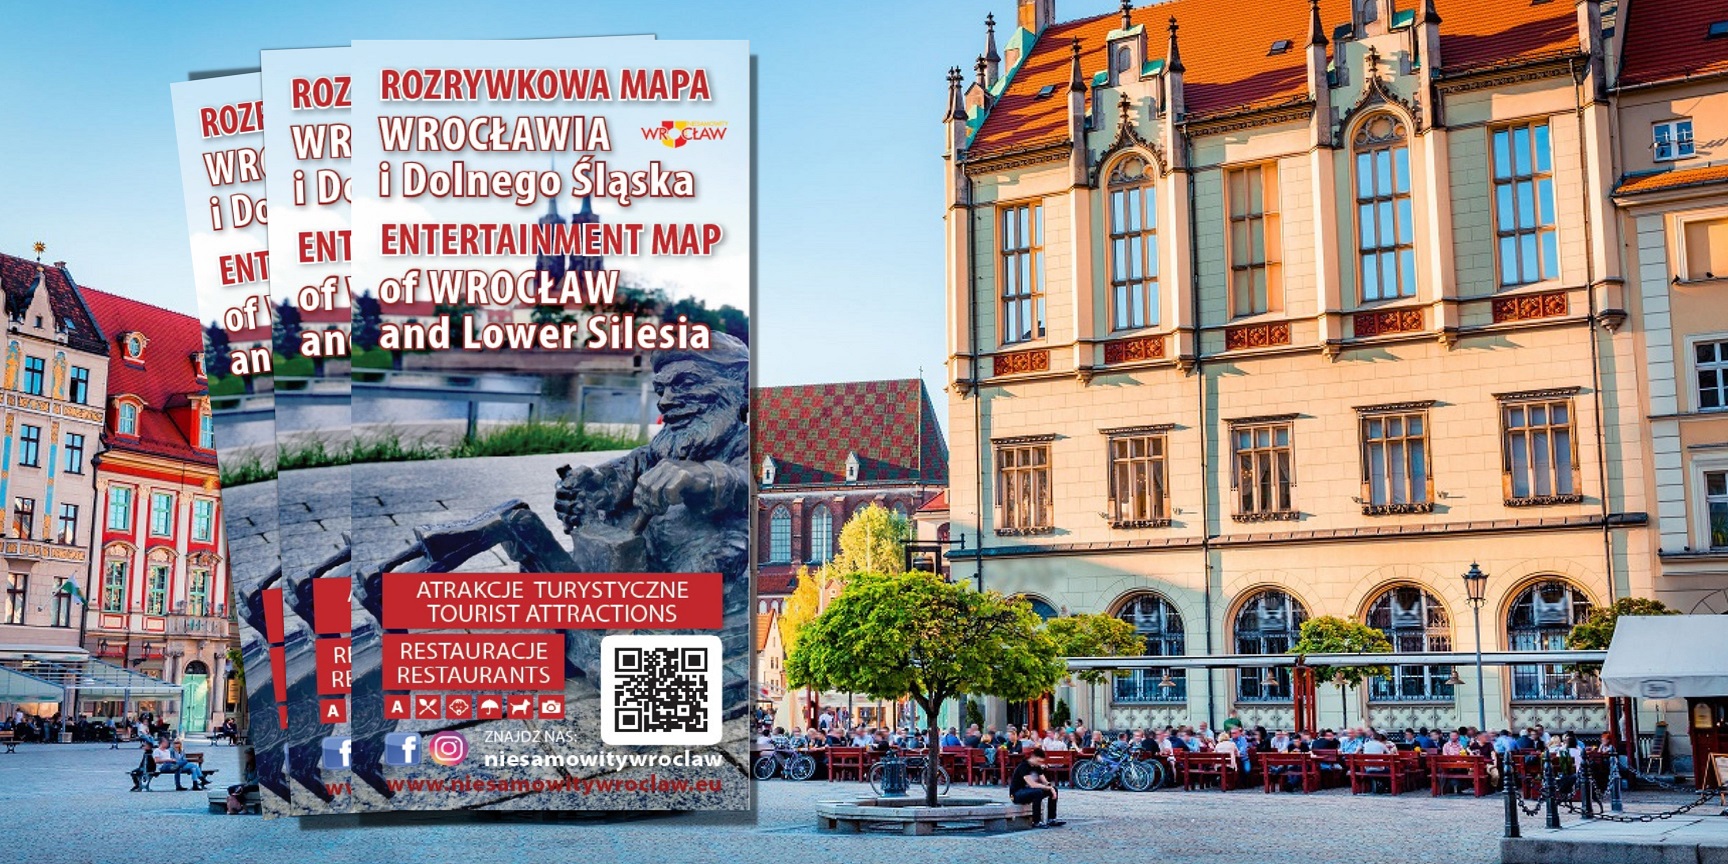 Rozrywkowa Mapa Wrocławia i Dolnego Śląska